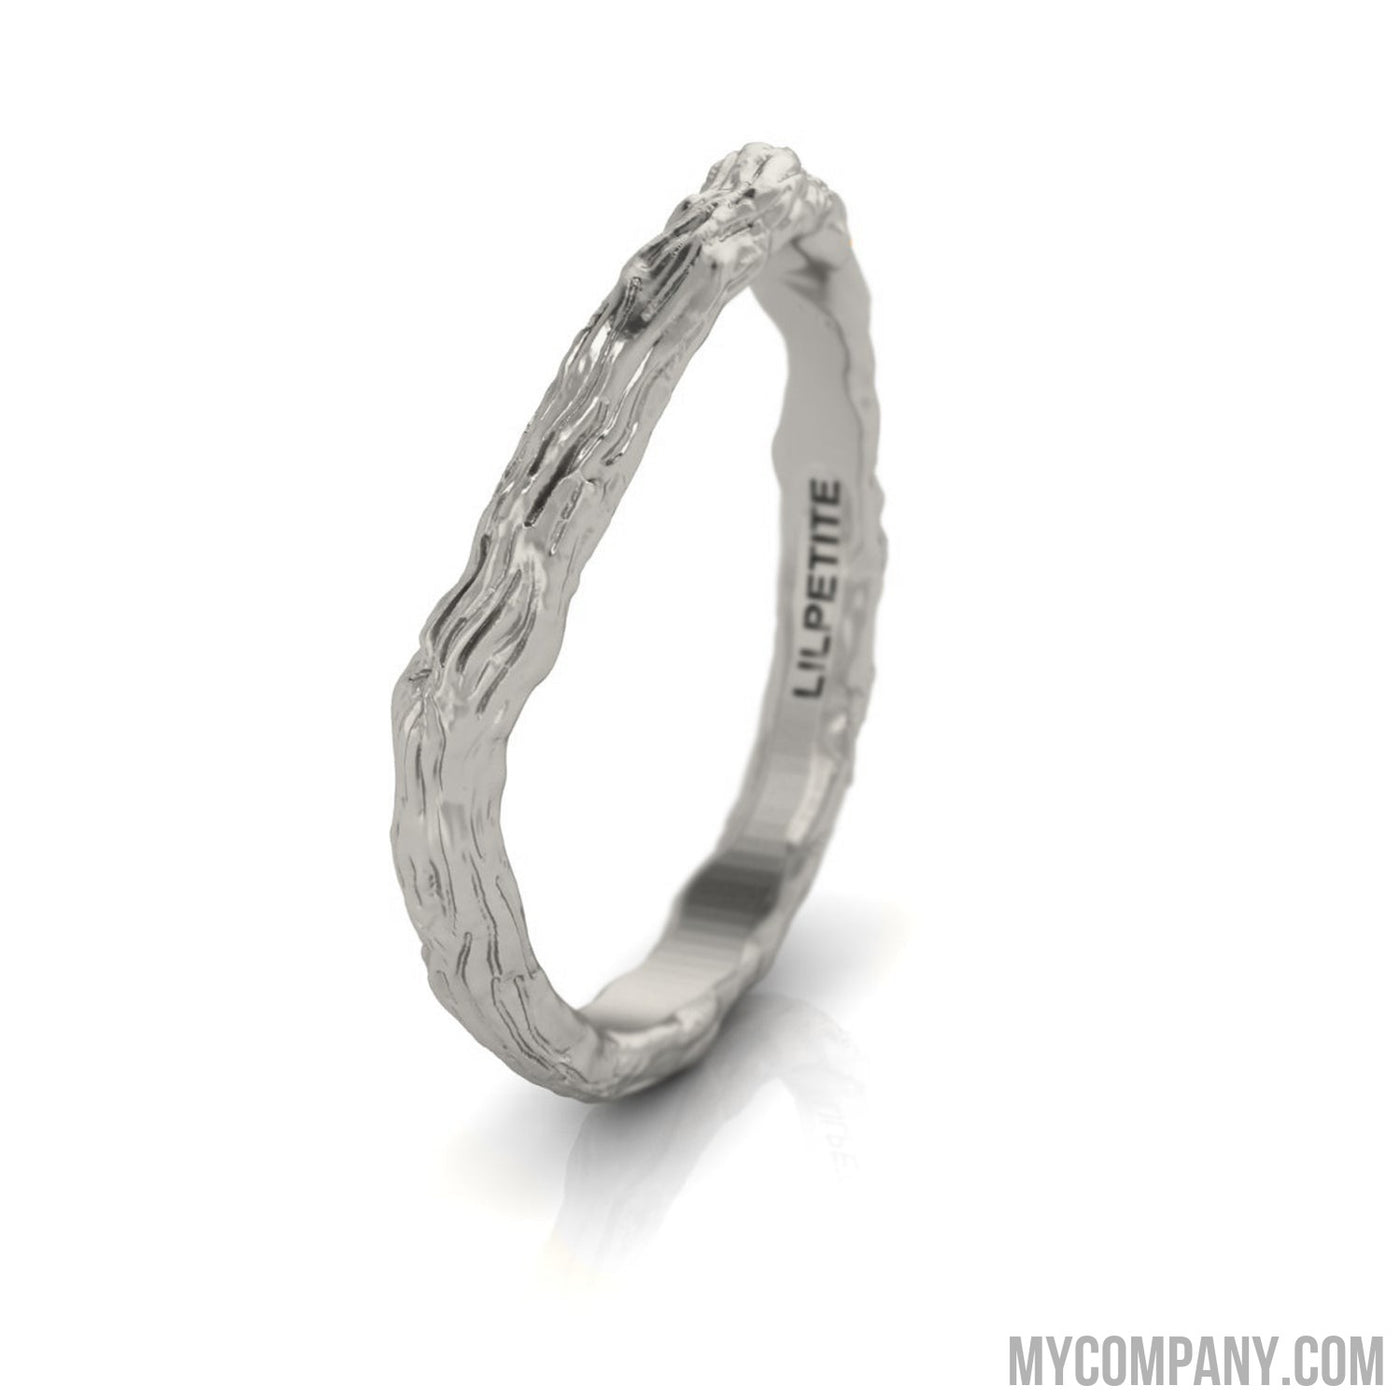 Feywoods Woodland Match Ring / Twig Branch Wedding Ring